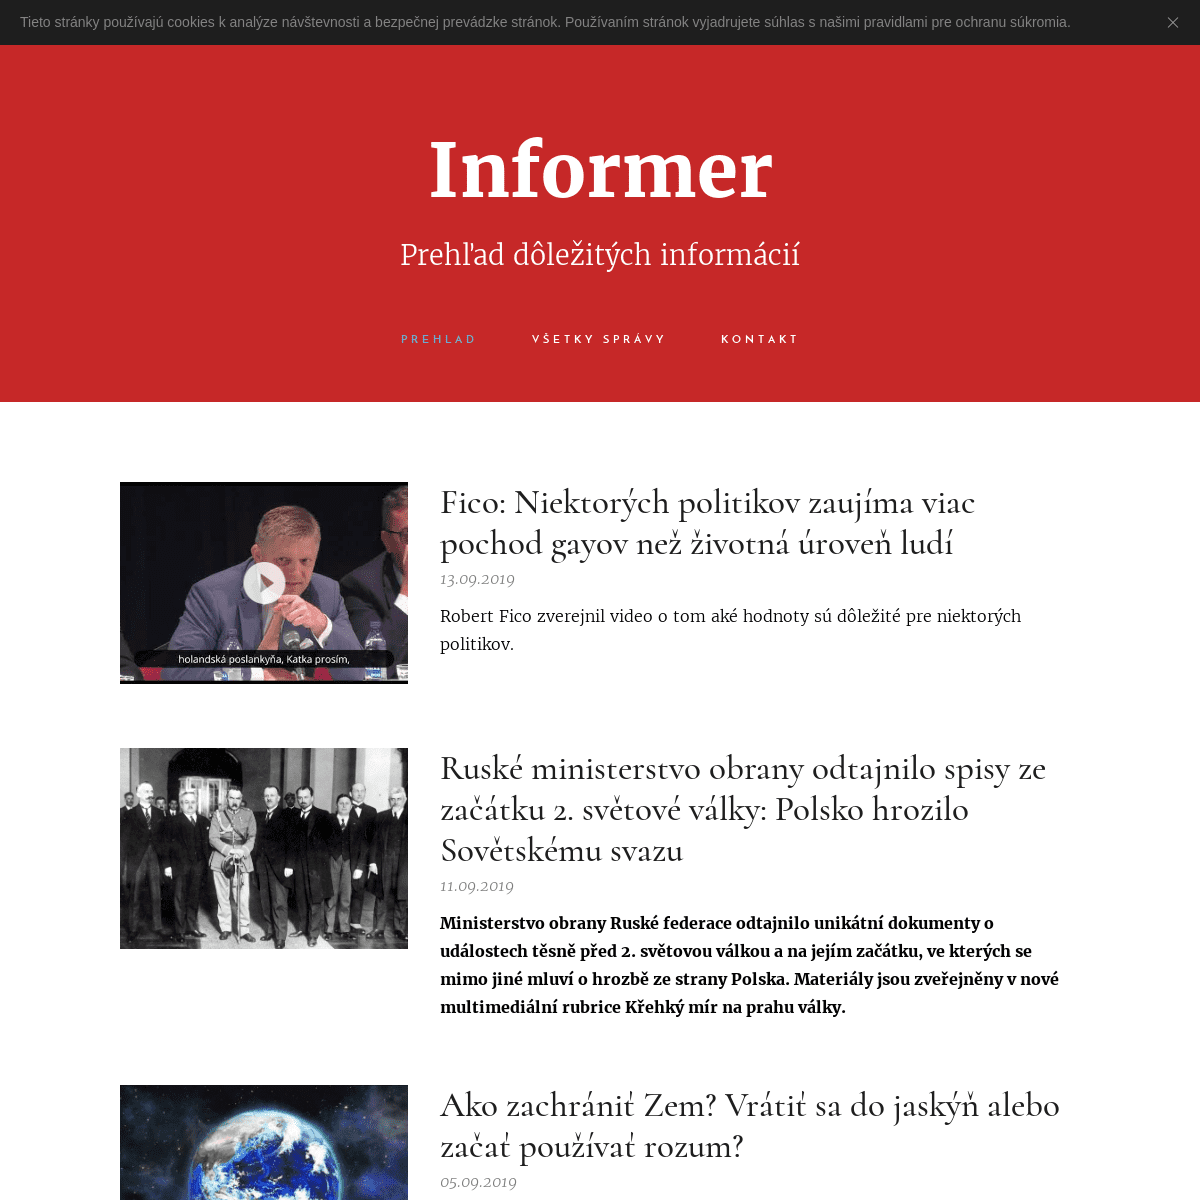 Informer